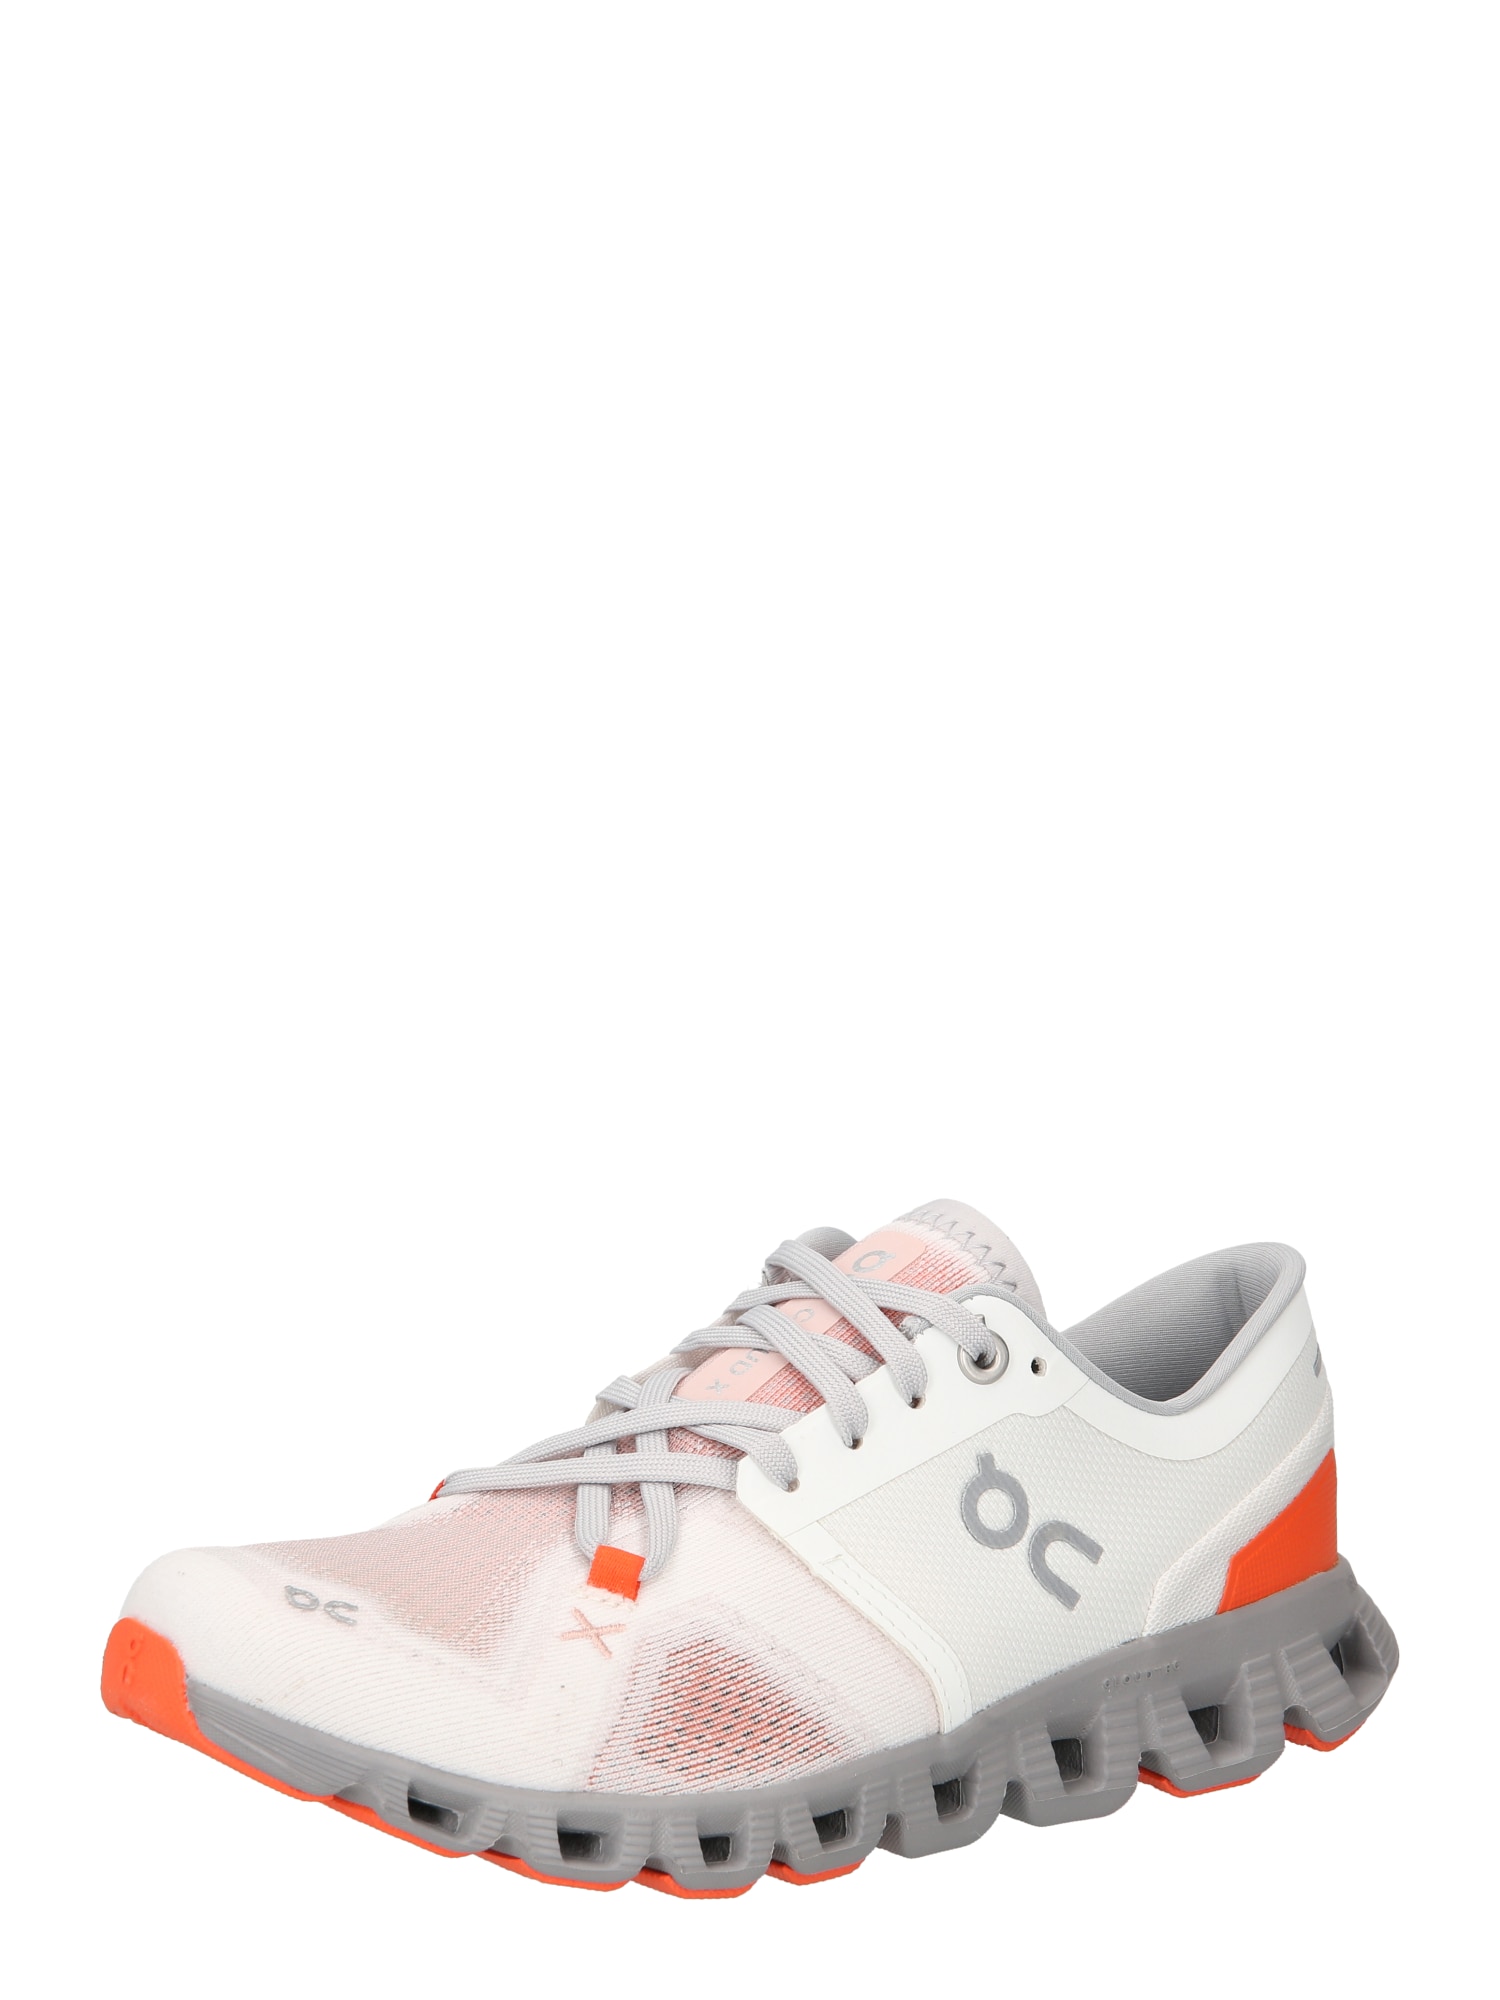 Bežecká obuv CloudX3 sivá oranžová biela On